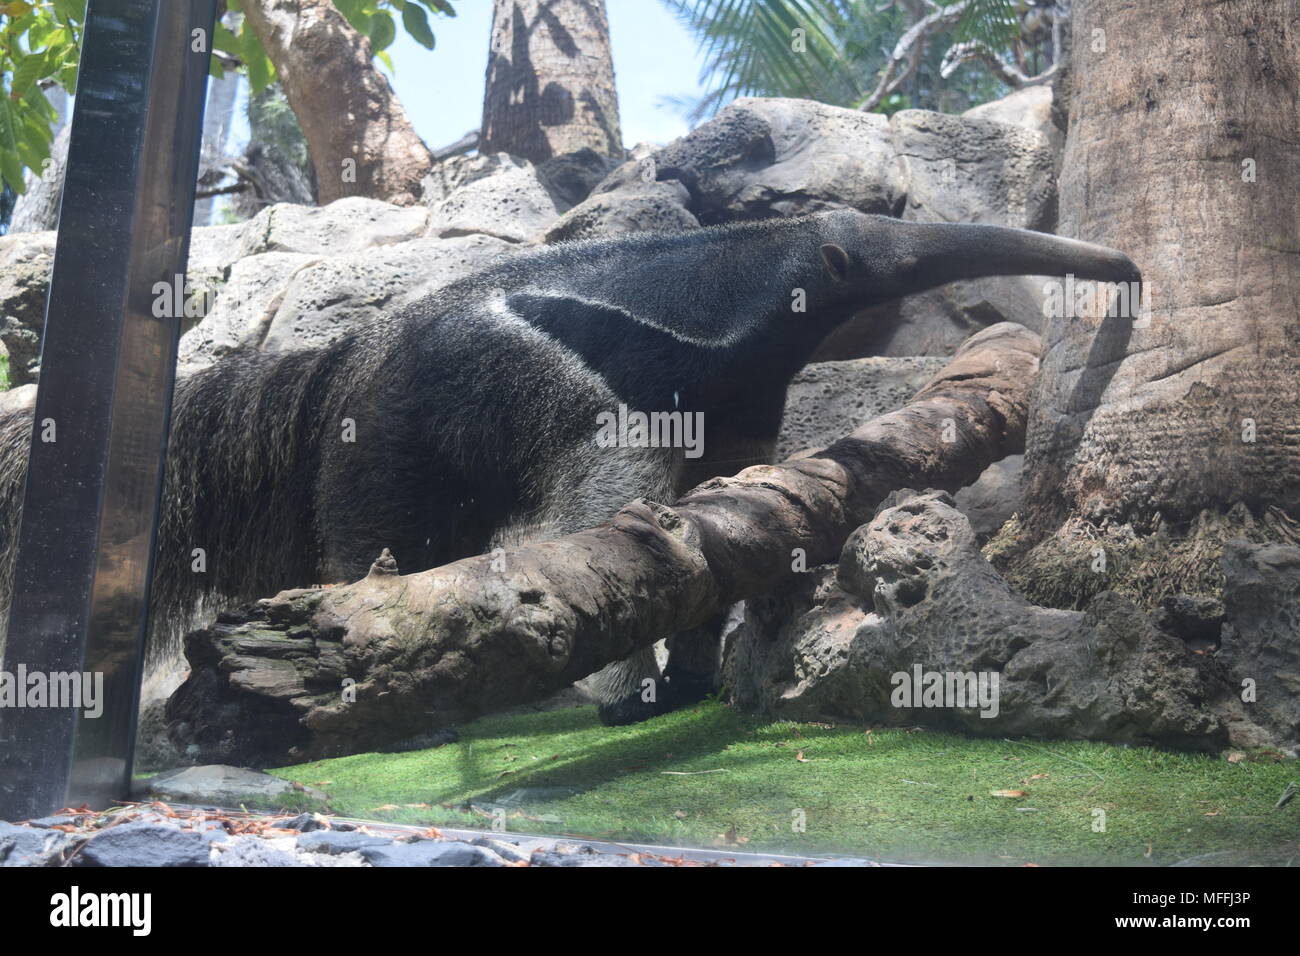 Riesenschildkröten weißer Tiger gorillas Schwertwale orcas Tiere''''' Kaiserpinguine ''red Pandas loro park 'Teneriffa' canaty Inseln. Stockfoto